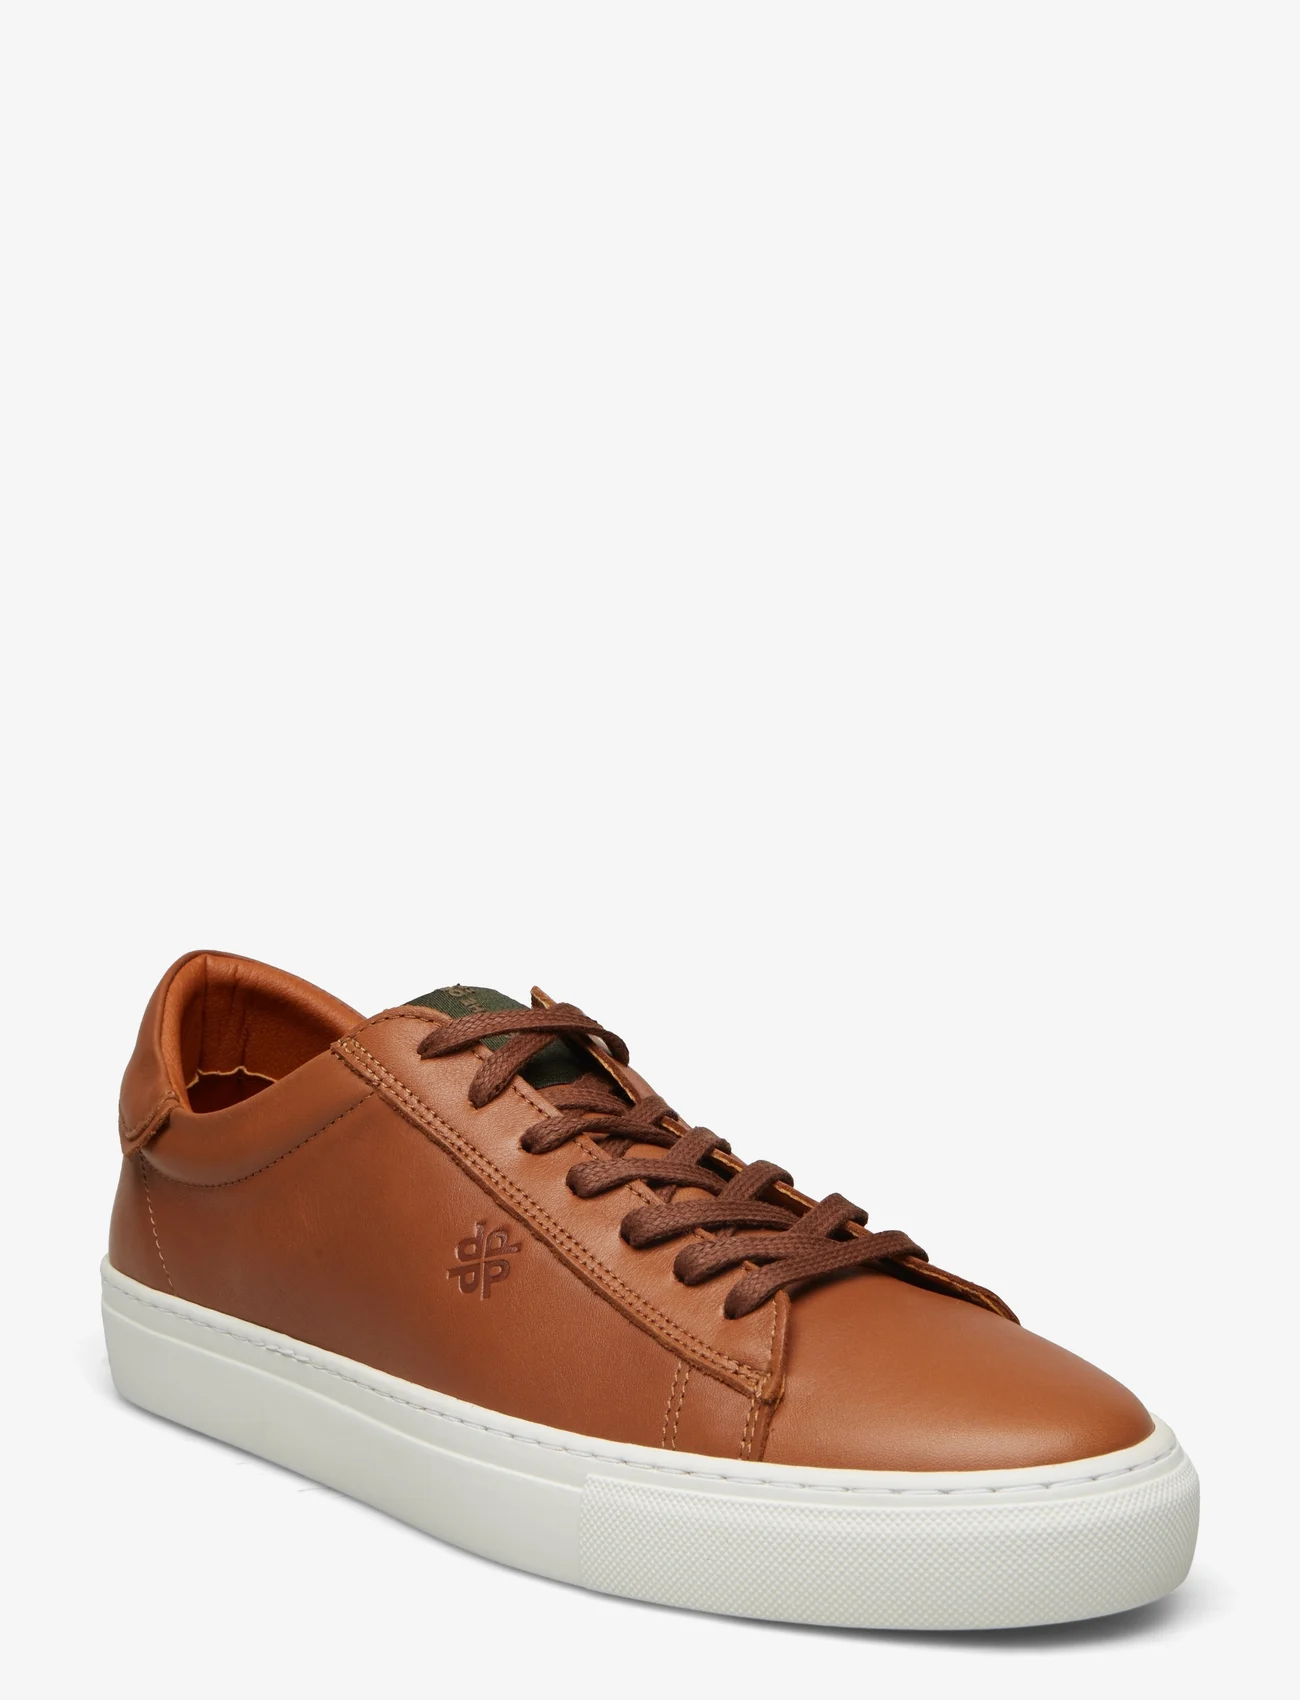 Playboy Footwear - Henri - låga sneakers - brown leather - 0